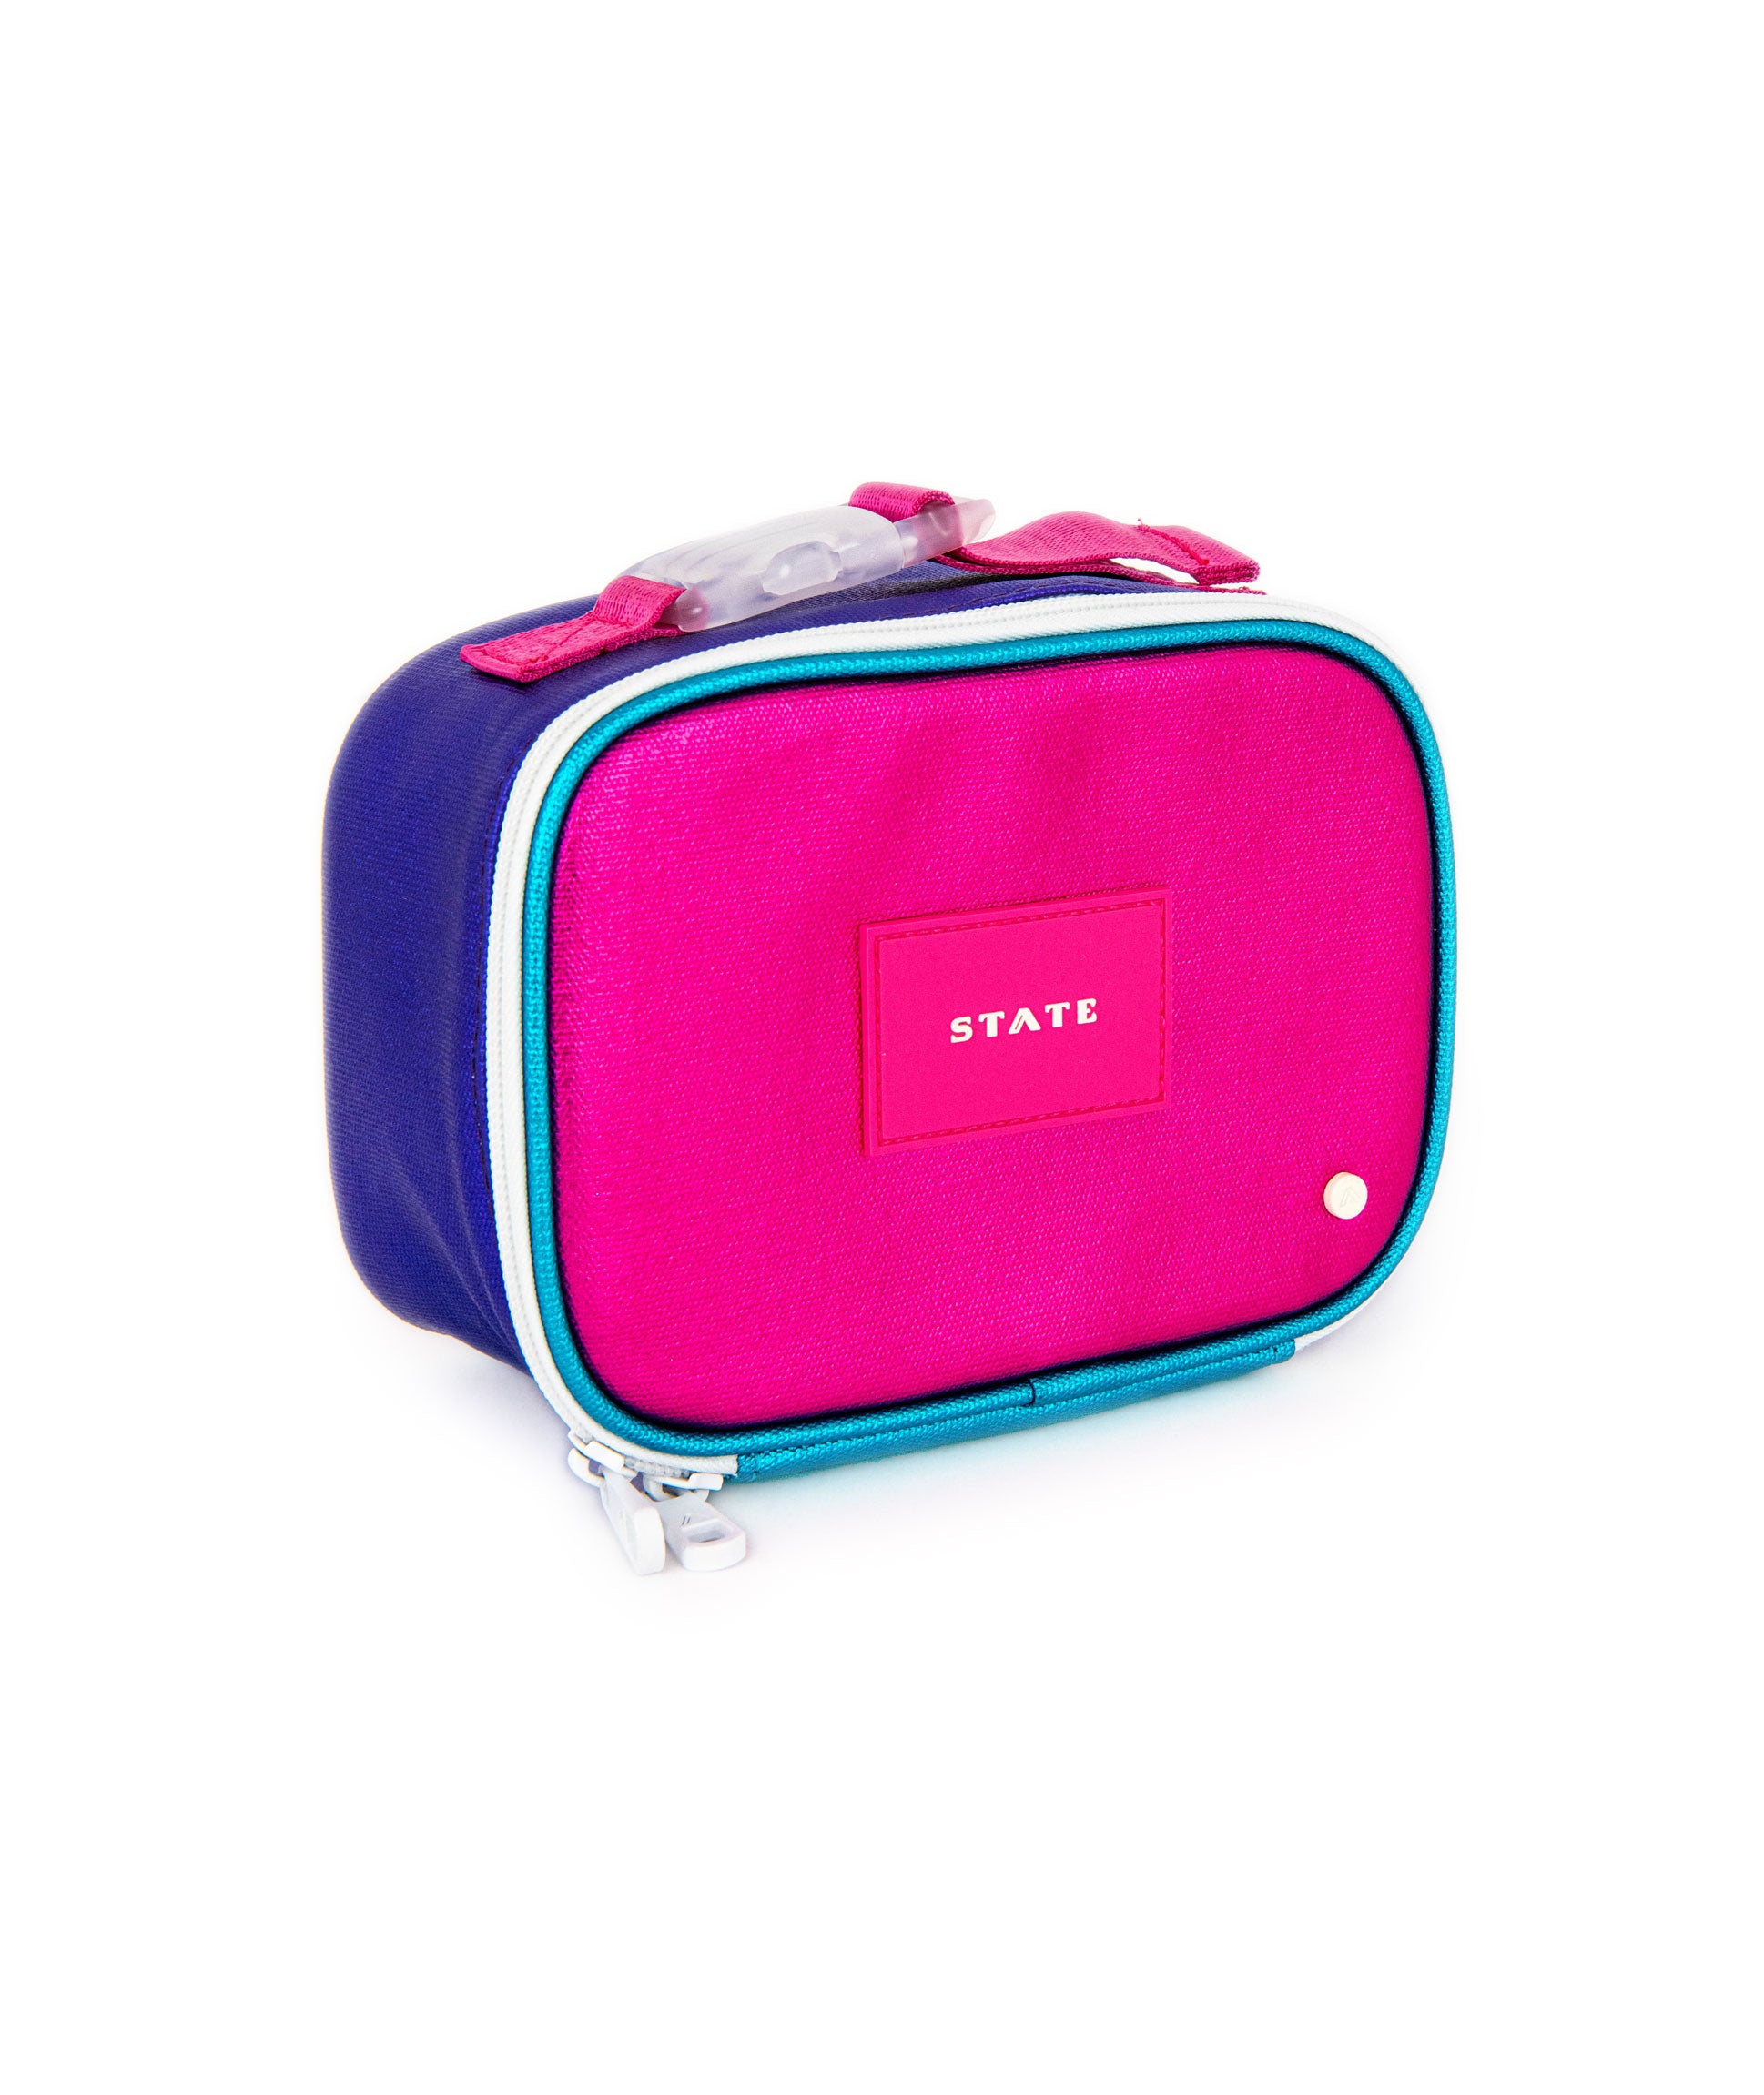 $99 Garnet Hill Messenger Bag + LUNCH BOX school girl pink purple Blue  organizer